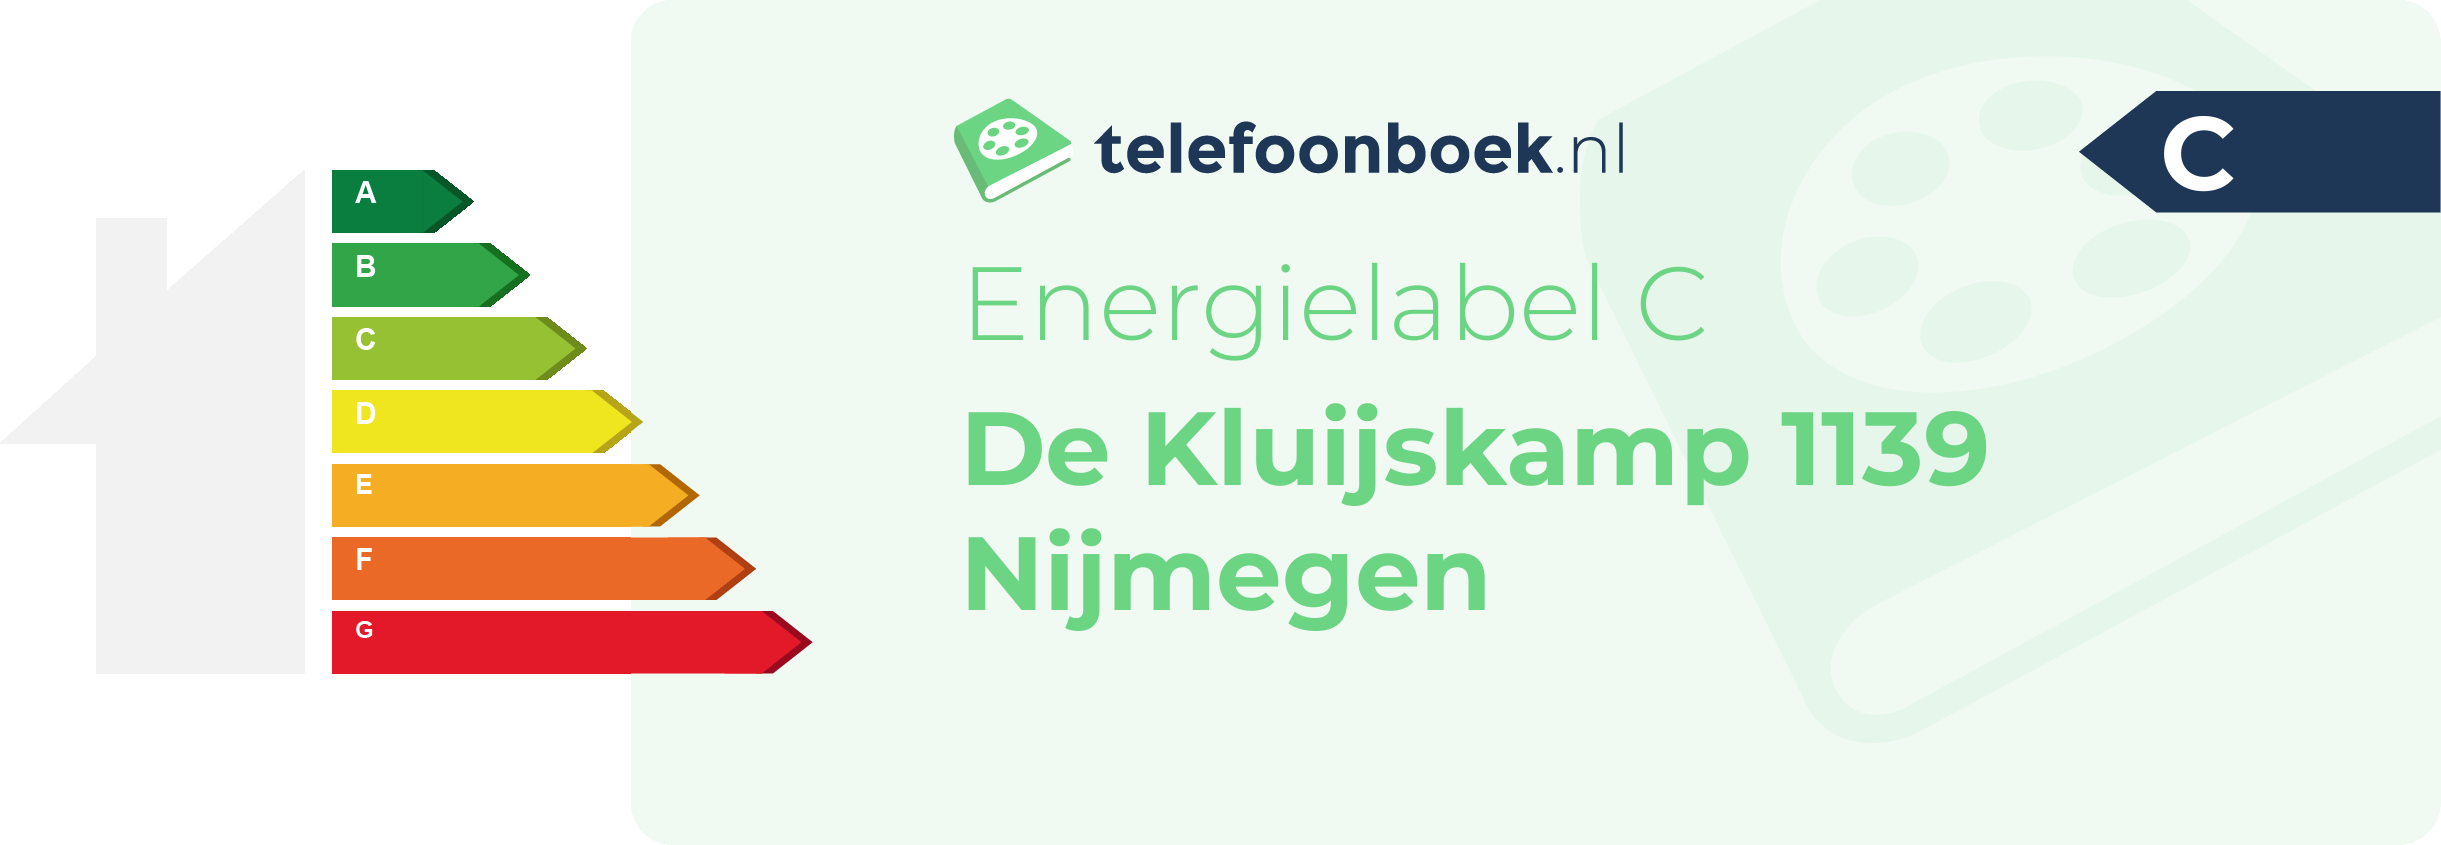 Energielabel De Kluijskamp 1139 Nijmegen